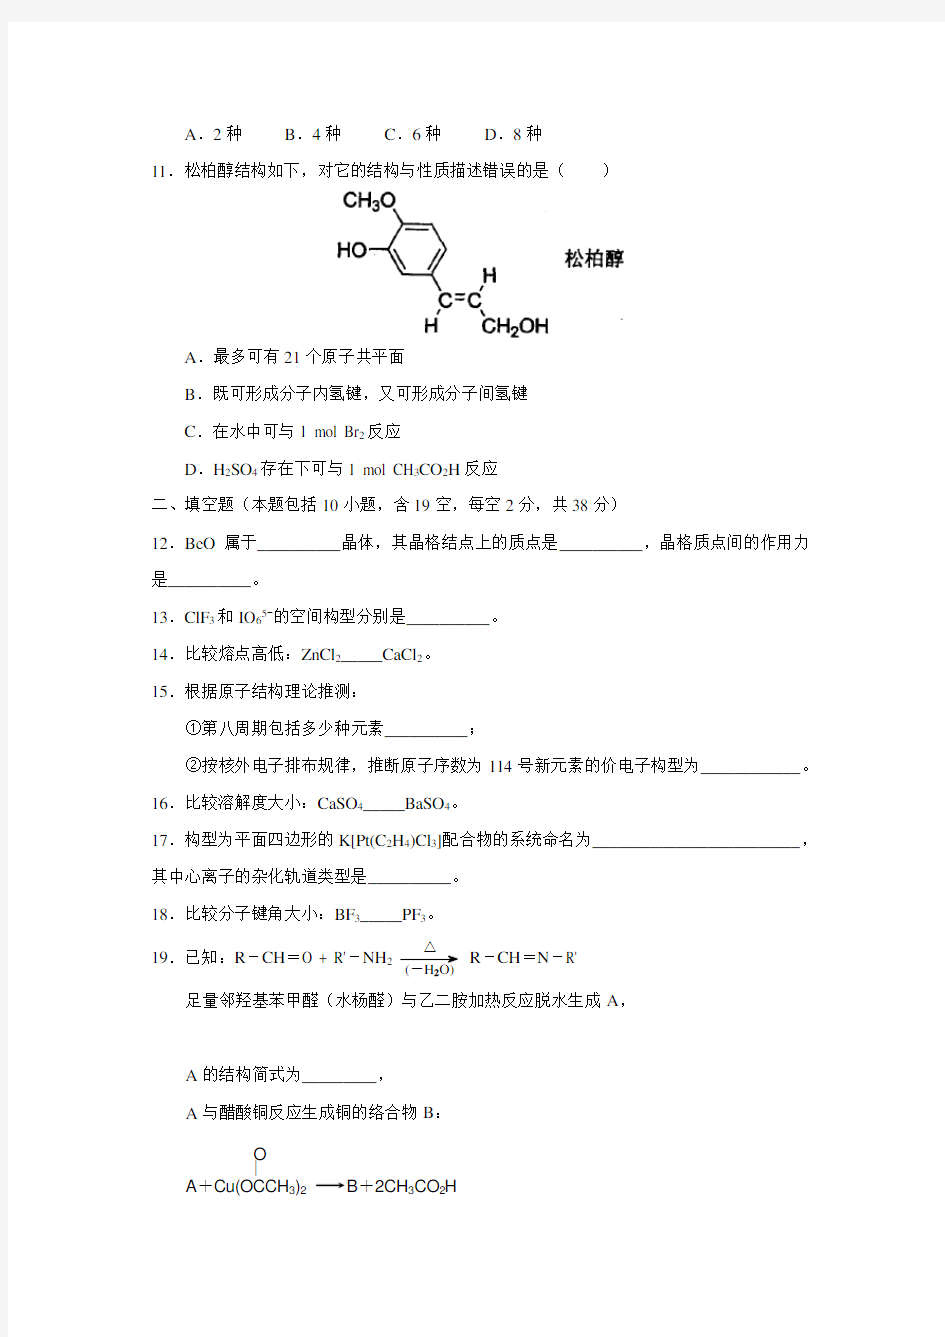 2013年天津市高中学生化学竞赛预赛试卷